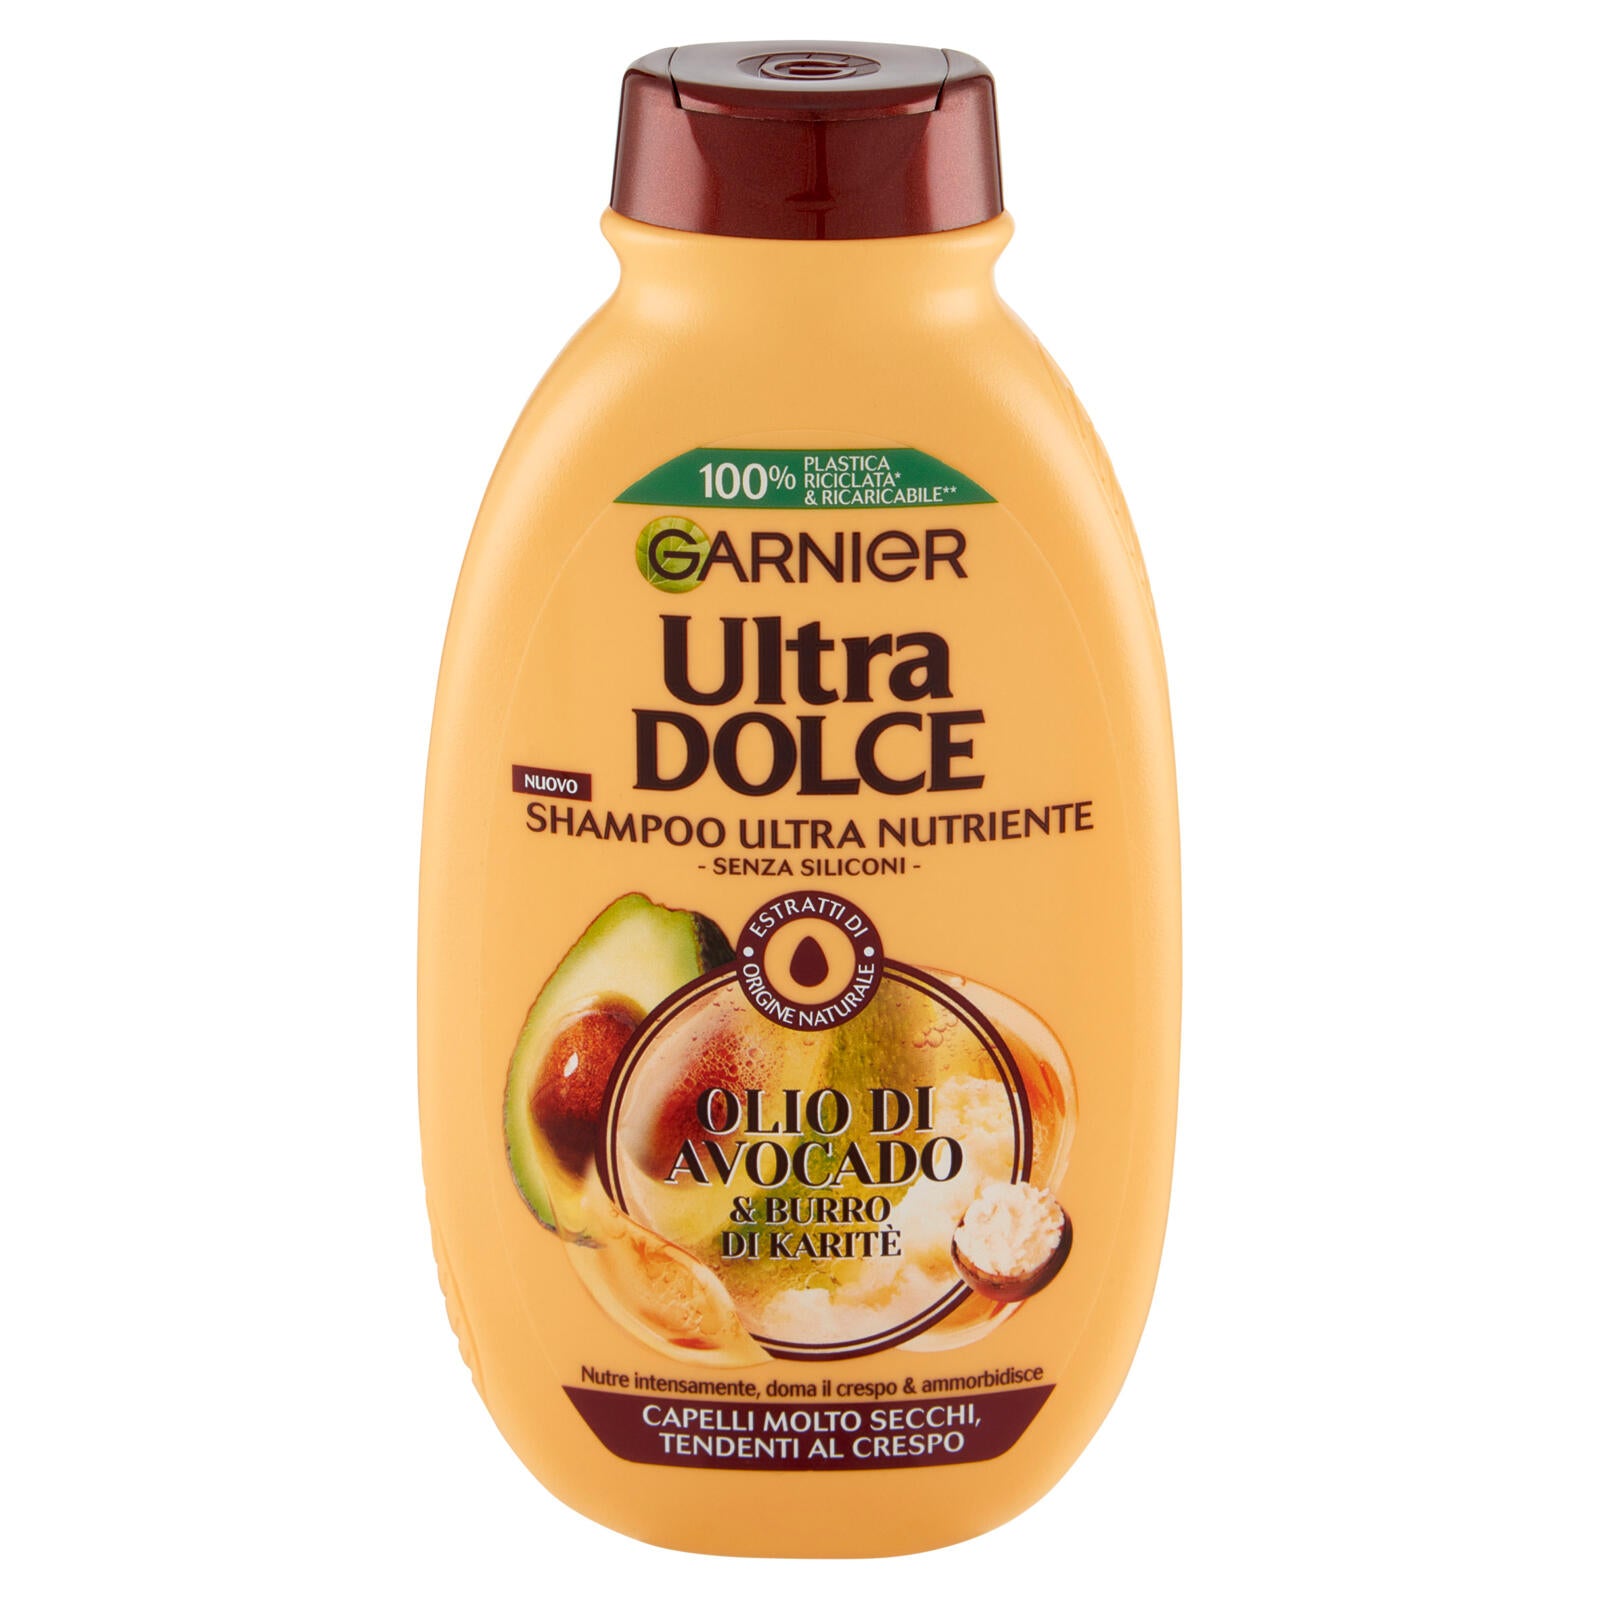 Garnier Ultra Dolce Shampoo all'olio di Avocado e burro di Karité per capelli ricci o mossi, 250 ml